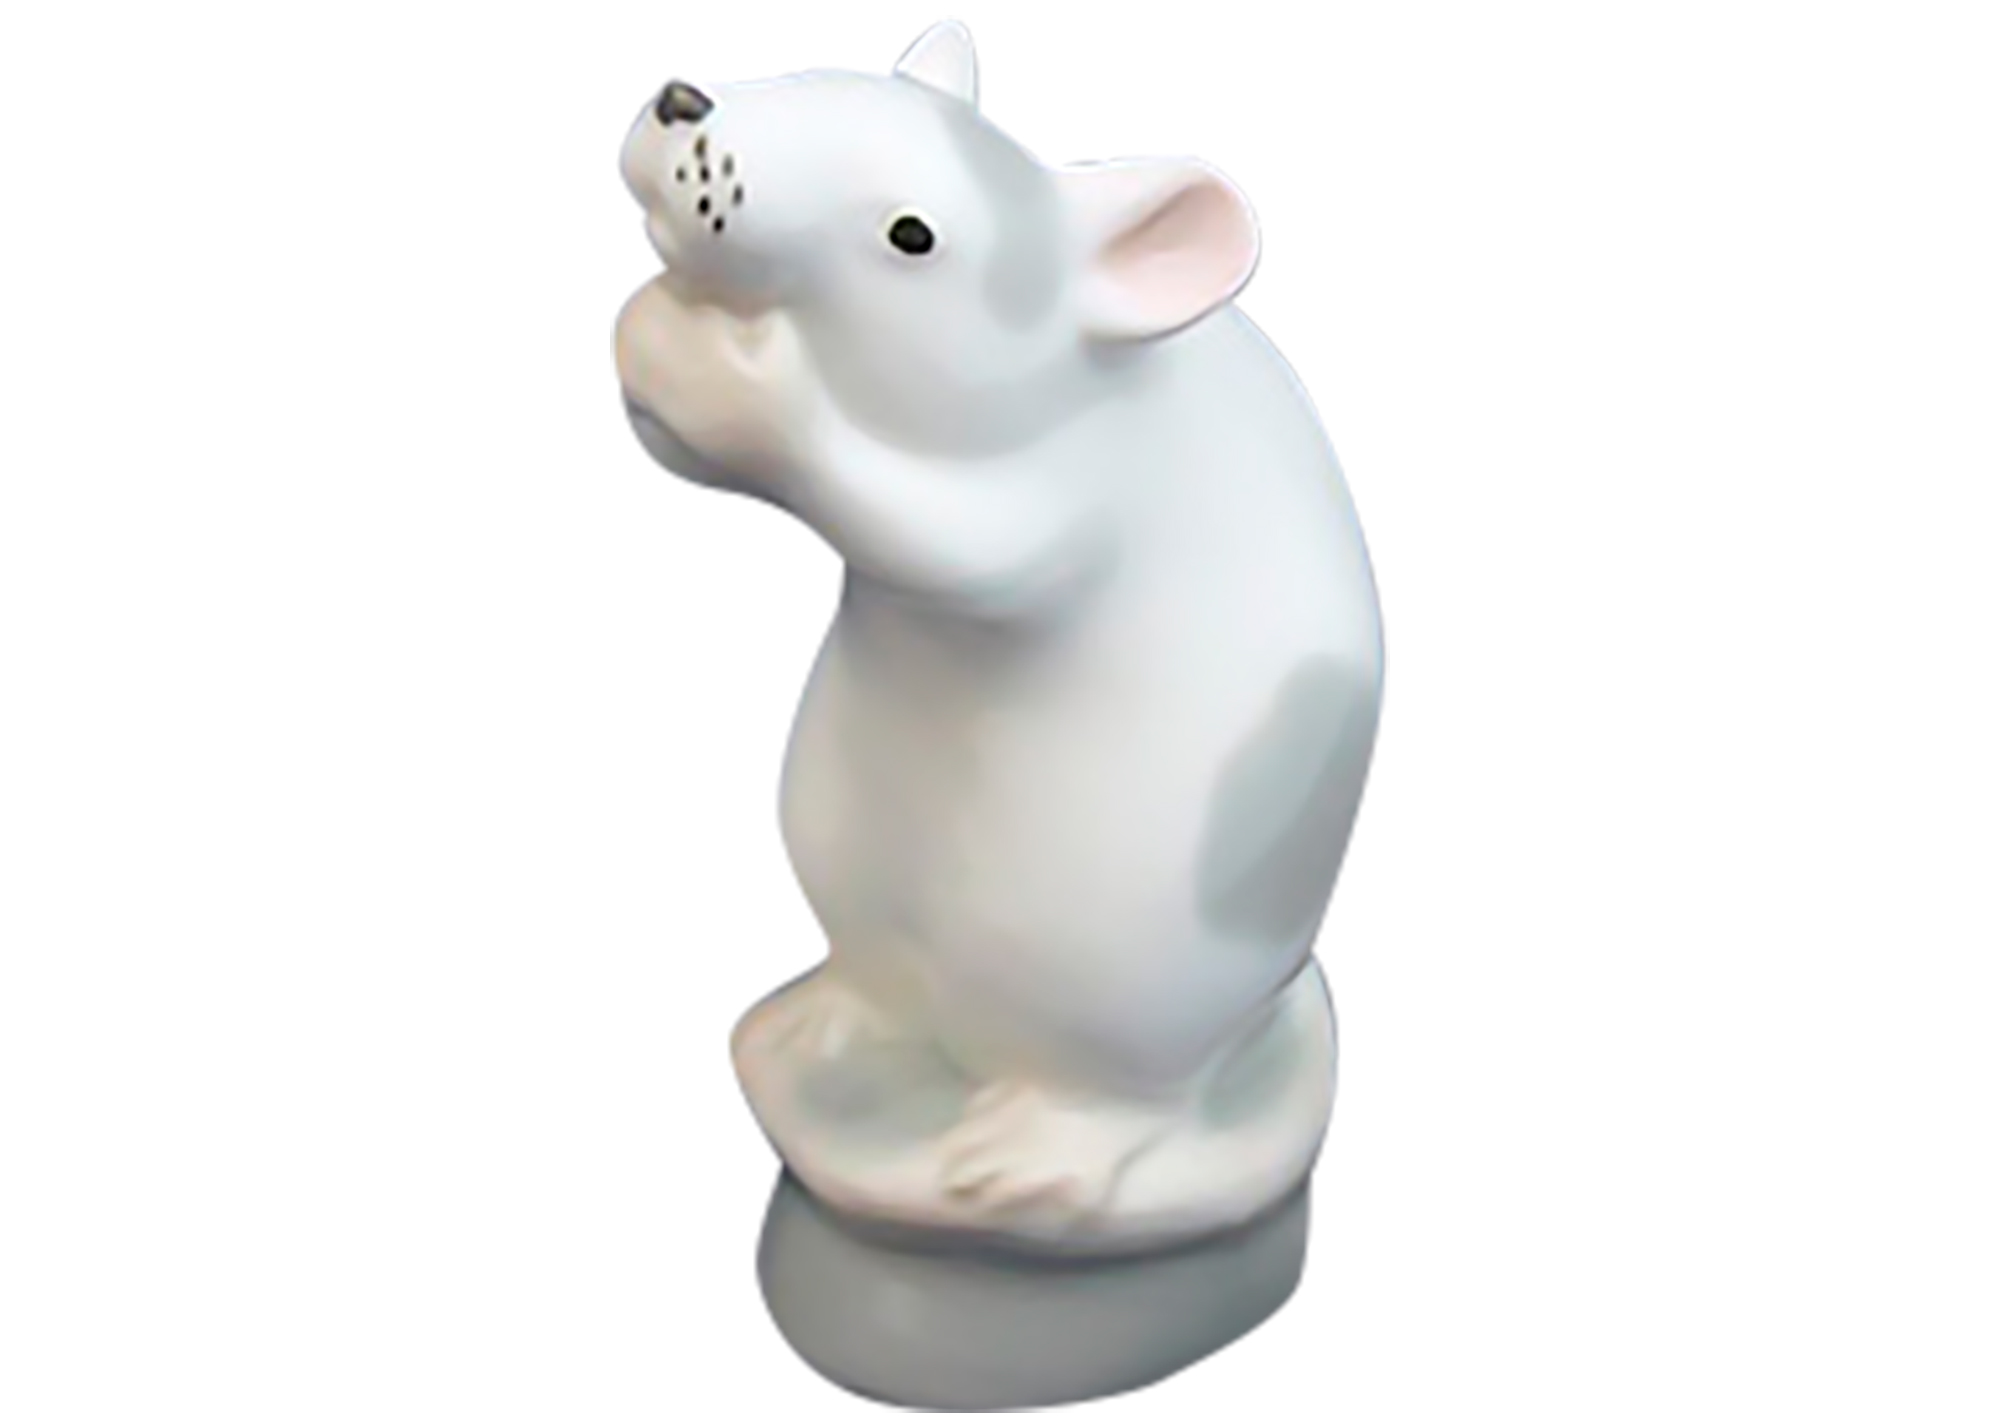 Buy Фарфоровая фигурка «Белая мышка» at GoldenCockerel.com